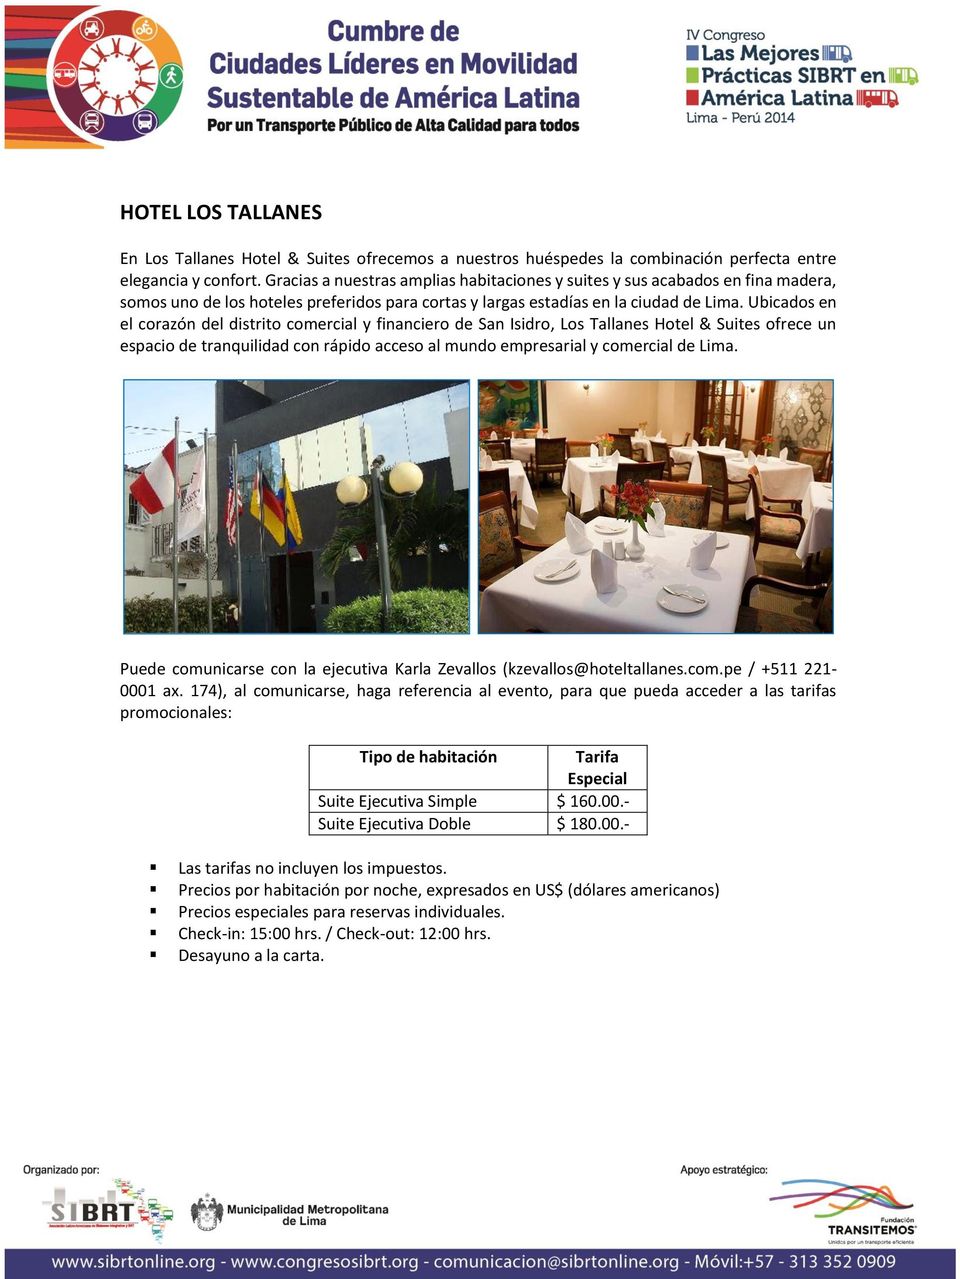 Ubicados en el corazón del distrito comercial y financiero de San Isidro, Los Tallanes Hotel & Suites ofrece un espacio de tranquilidad con rápido acceso al mundo empresarial y comercial de Lima.